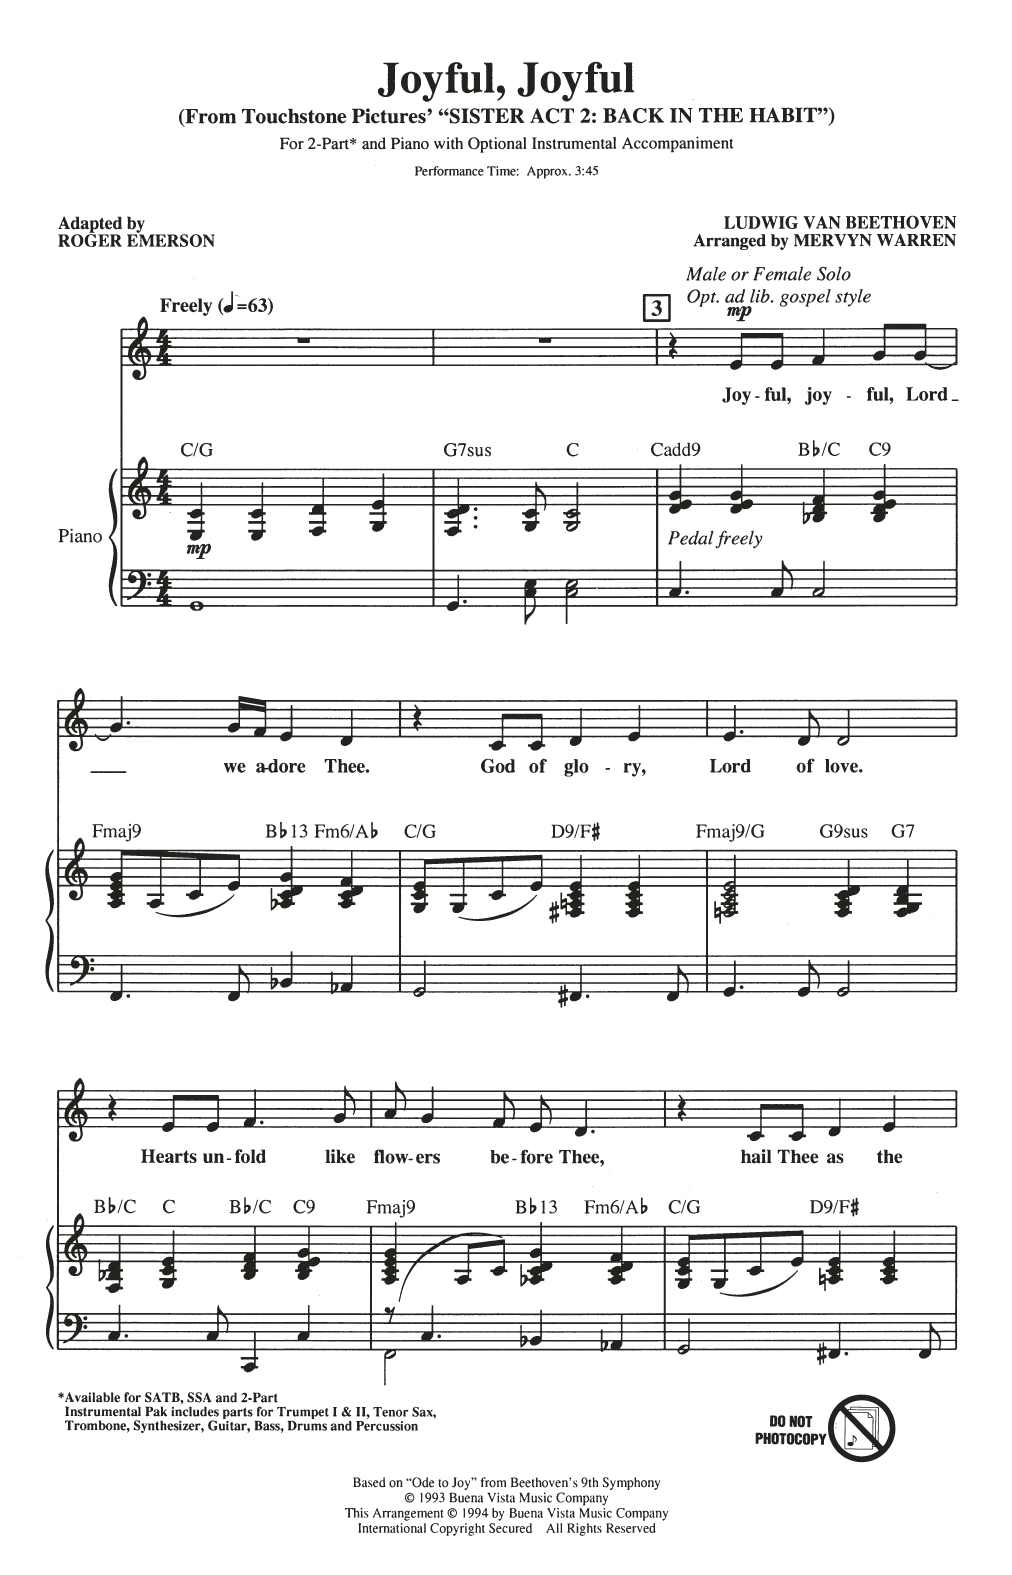 Mervyn Warren Joyful, Joyful (from Sister Act 2) (arr. Roger Emerson) Sheet Music Notes & Chords for 2-Part Choir - Download or Print PDF